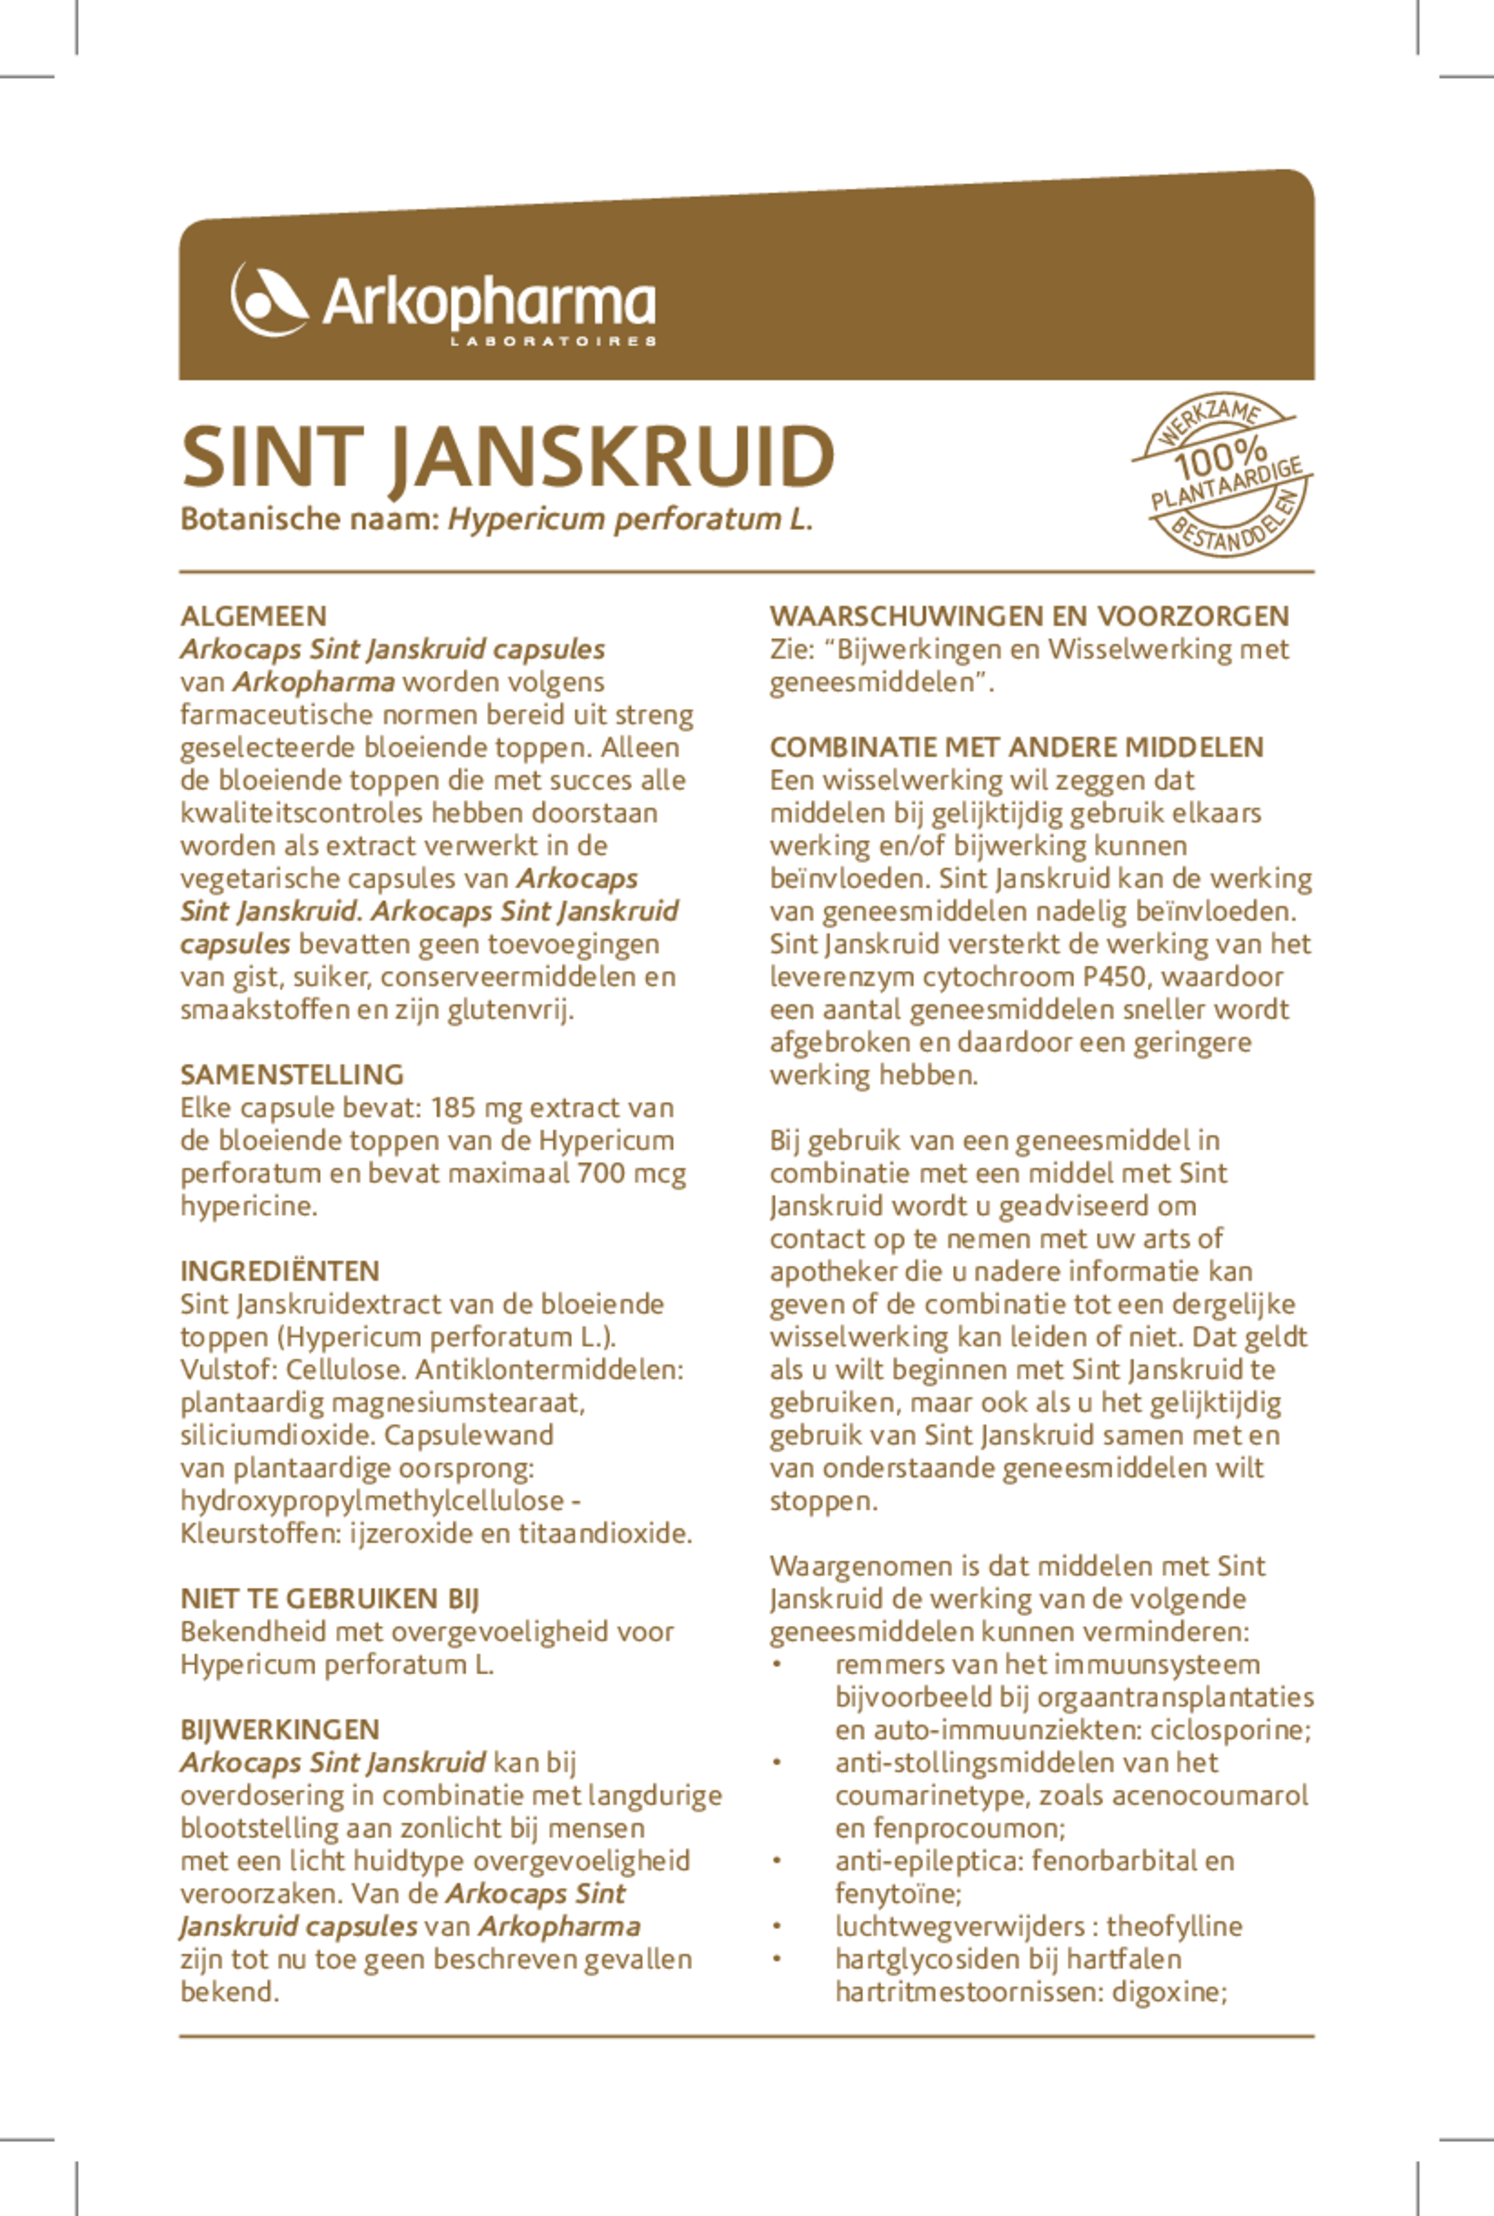 Sint Janskruid Capsules afbeelding van document #1, gebruiksaanwijzing